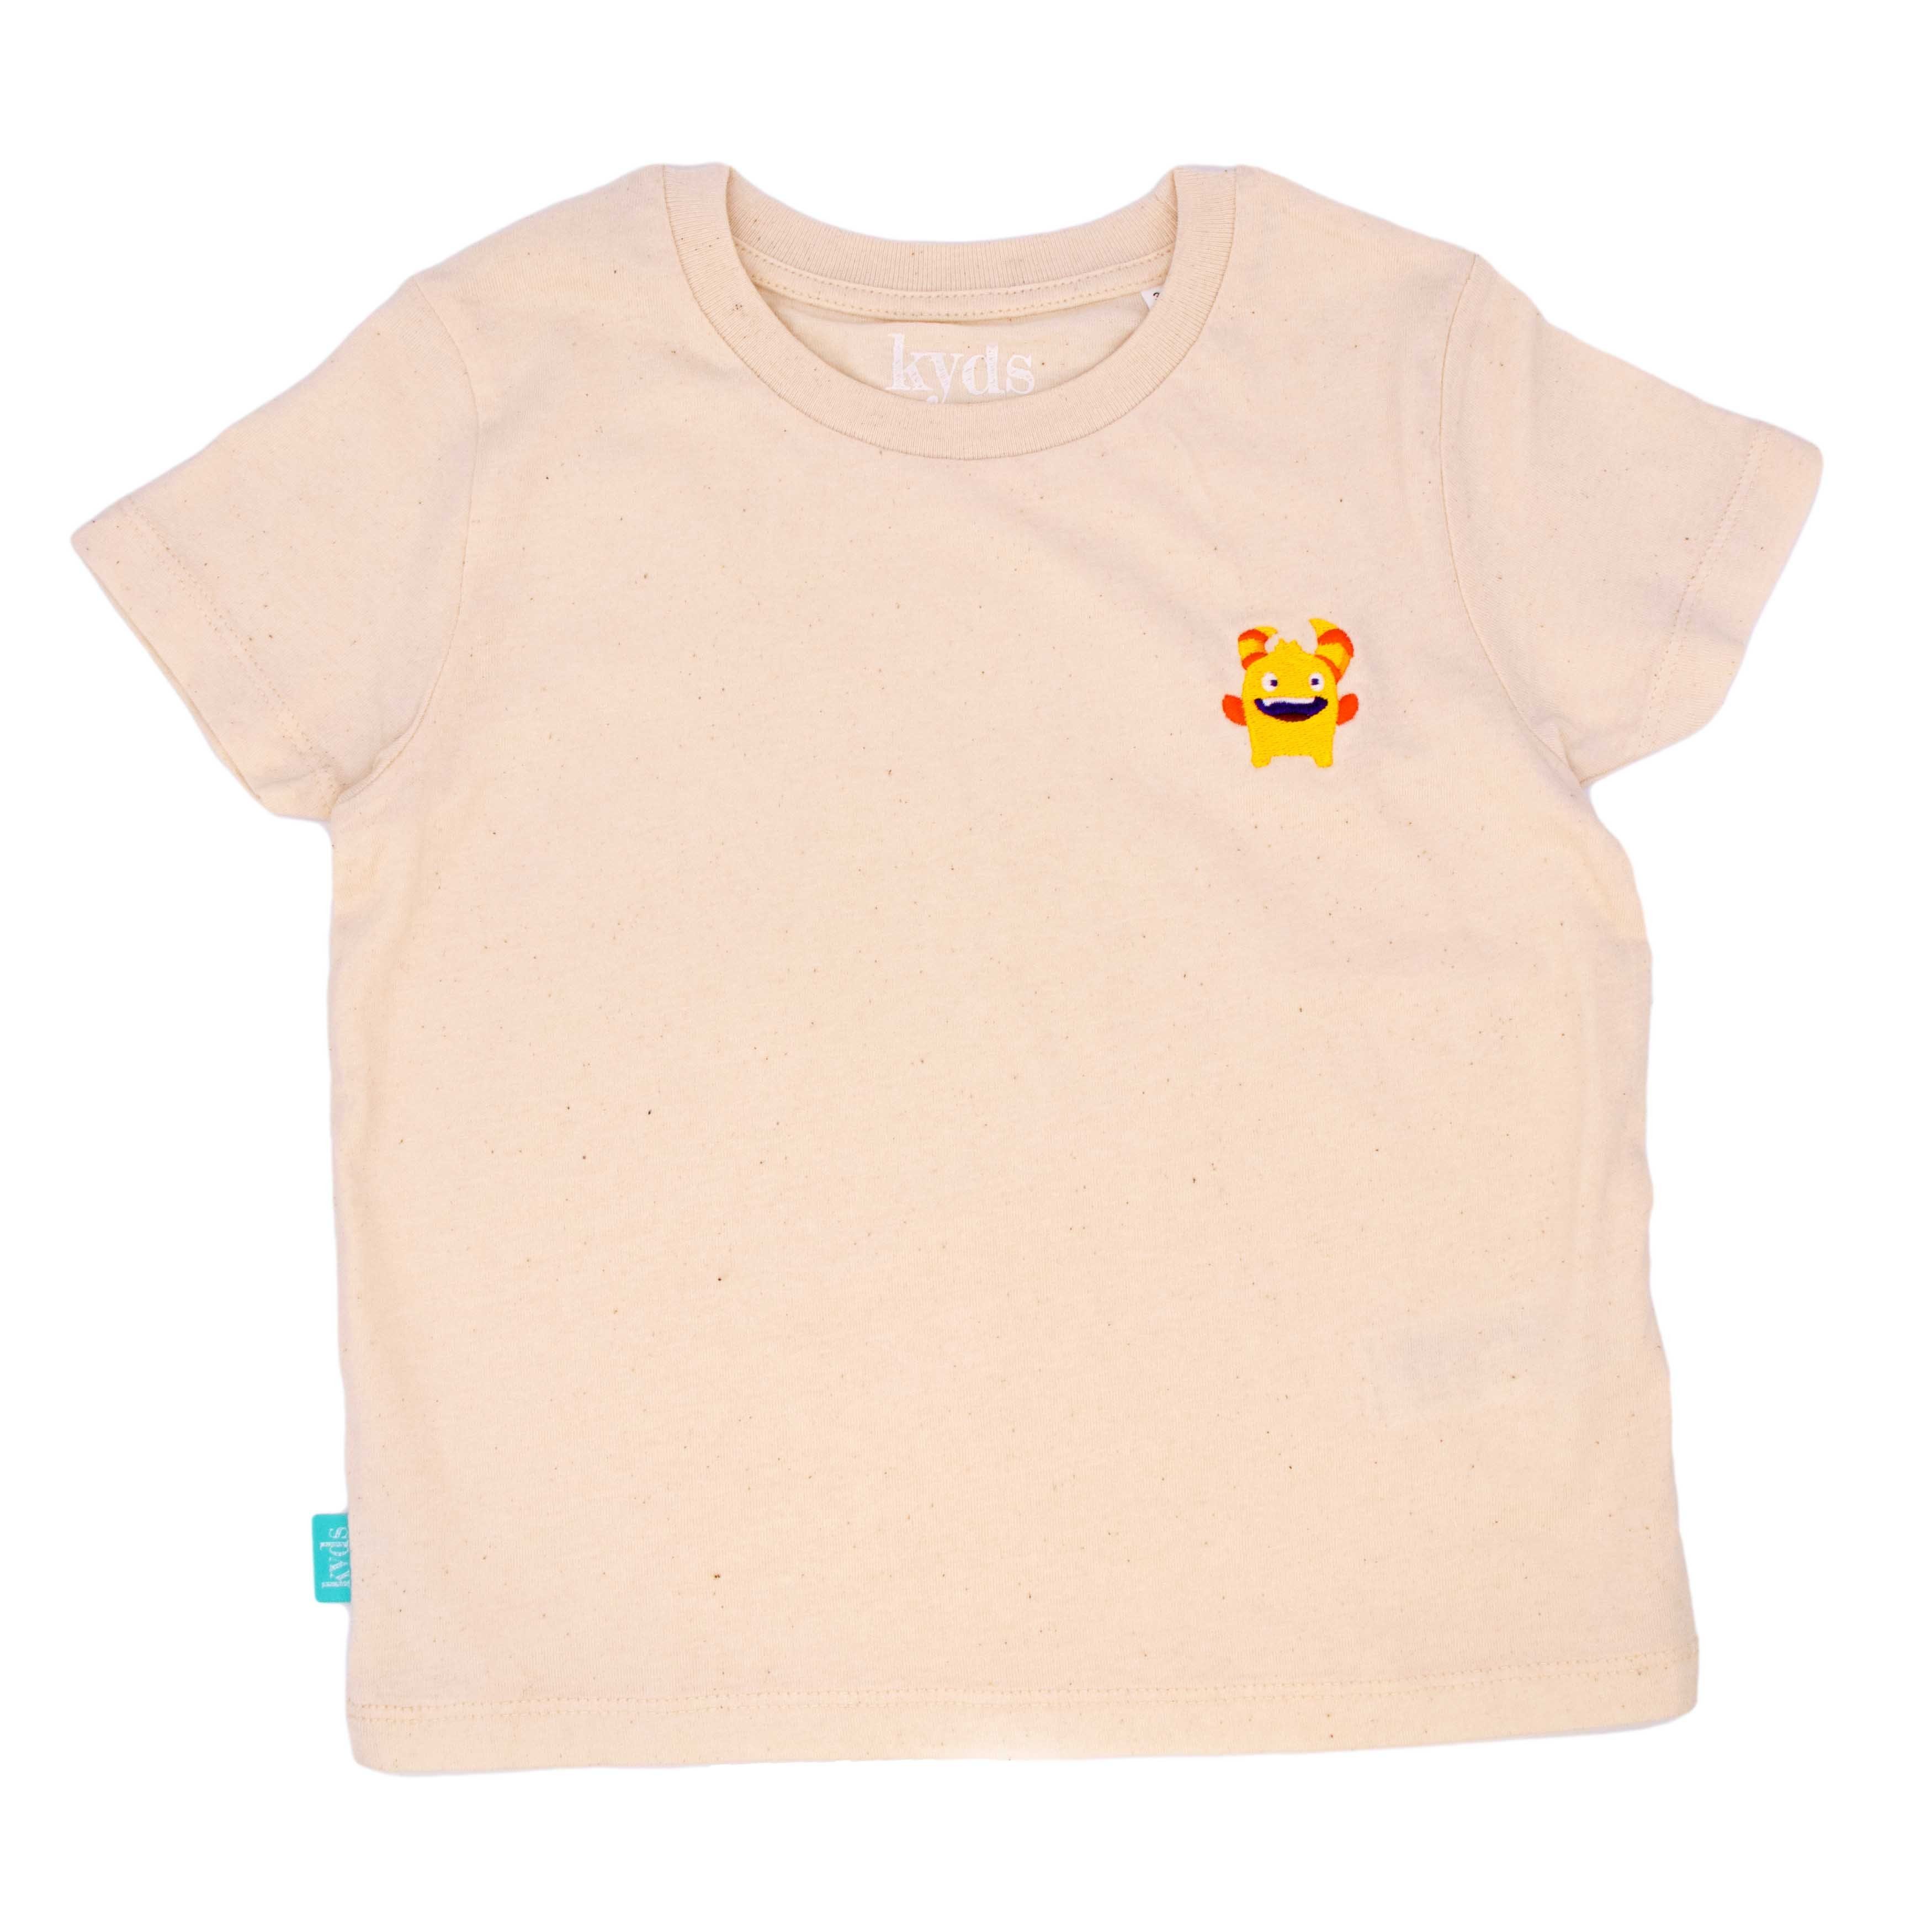 kyds T-Shirt Monster, Mädchen Bio-Baumwolle ab 100% und für Kinder aus Jahren Nachhaltiges Jungs T-Shirt 3